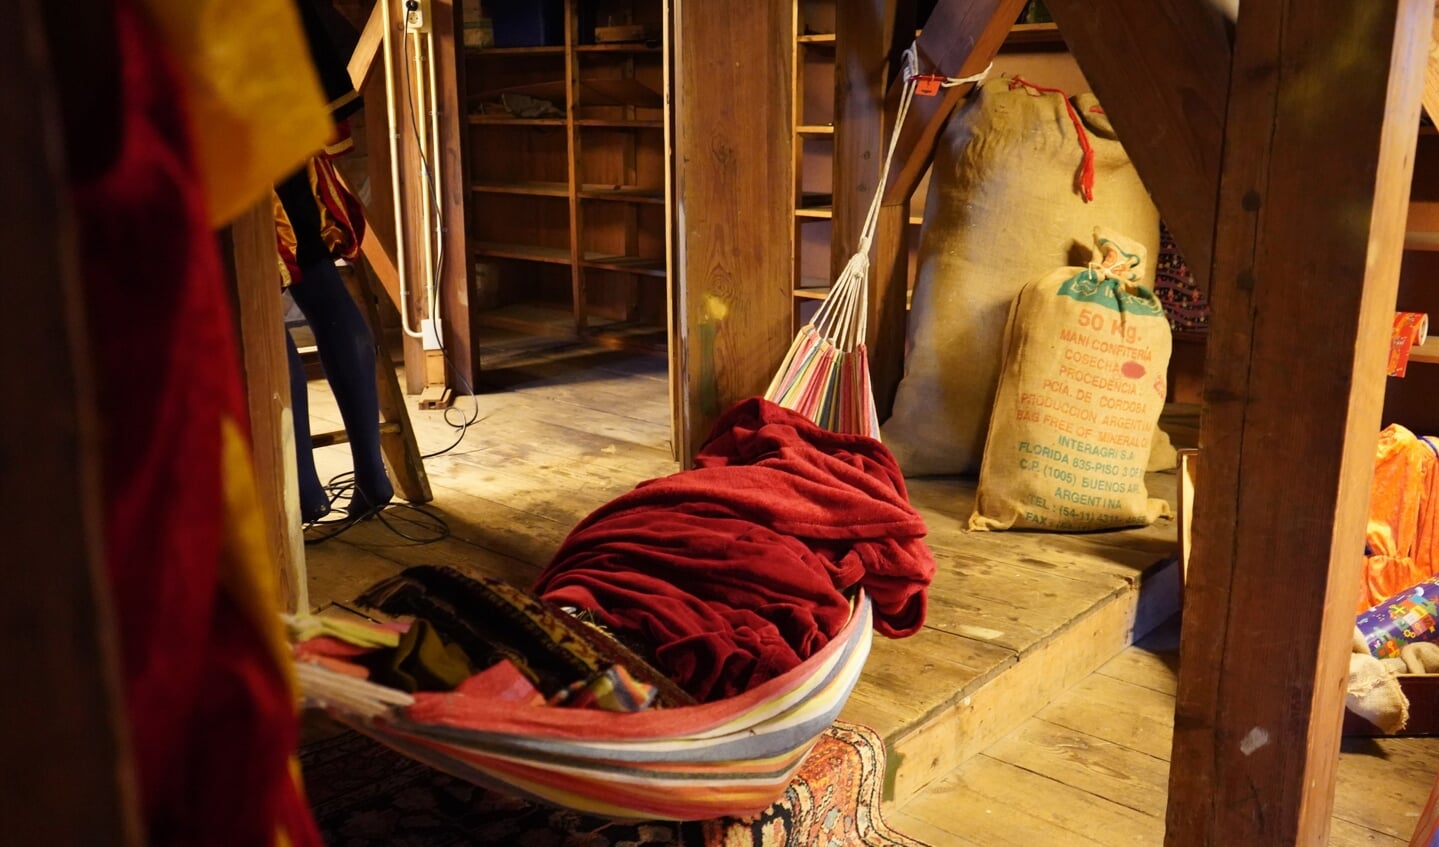 Zelfs een hangmat wordt door de Pieten gebruikt om een dutje te doen tussen het pakjes afleveren. 